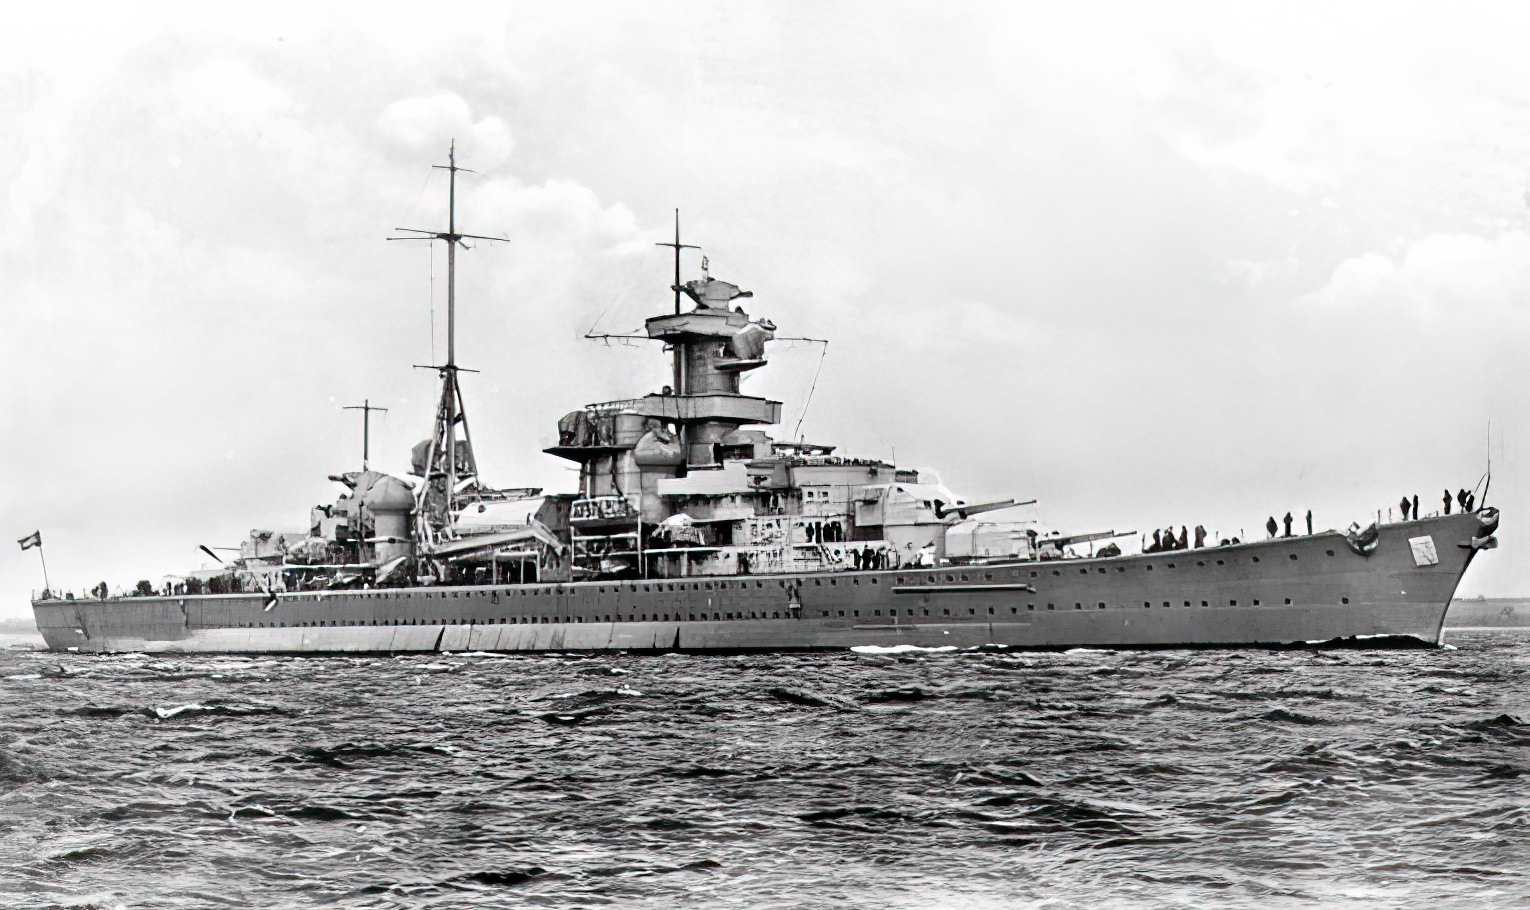 German heavy cruiser Blücher, view from starboard